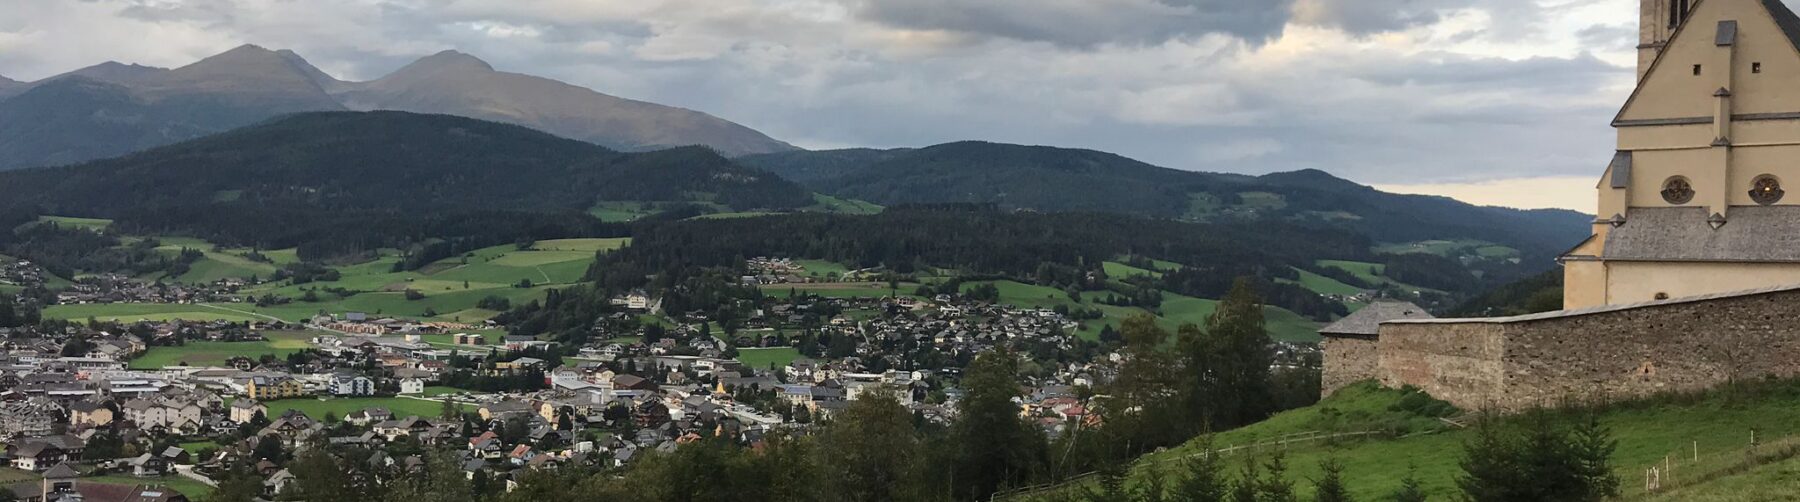 Von einem Hügel aus ist die Stadt Tamsweg im Lungau fotografiert. Im Vordergrund ist eine Wiese, rechts eine Kirche und im Hintergrund sind Berge. Der Himmel ist wolkig.